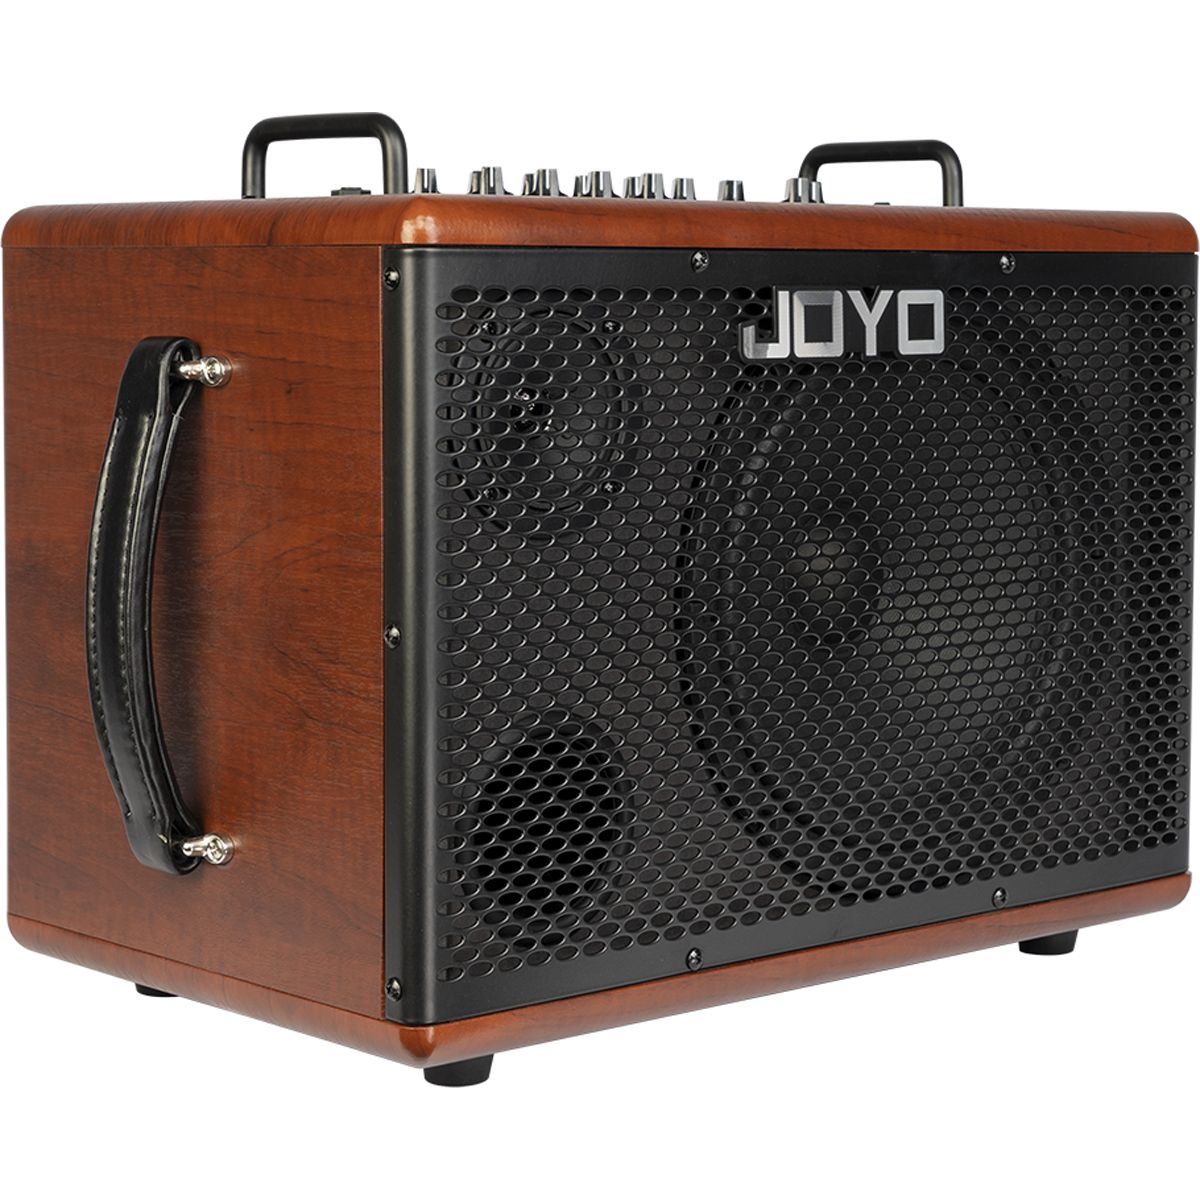 Joyo BSK80 Akustisk Guitar-Forstærker